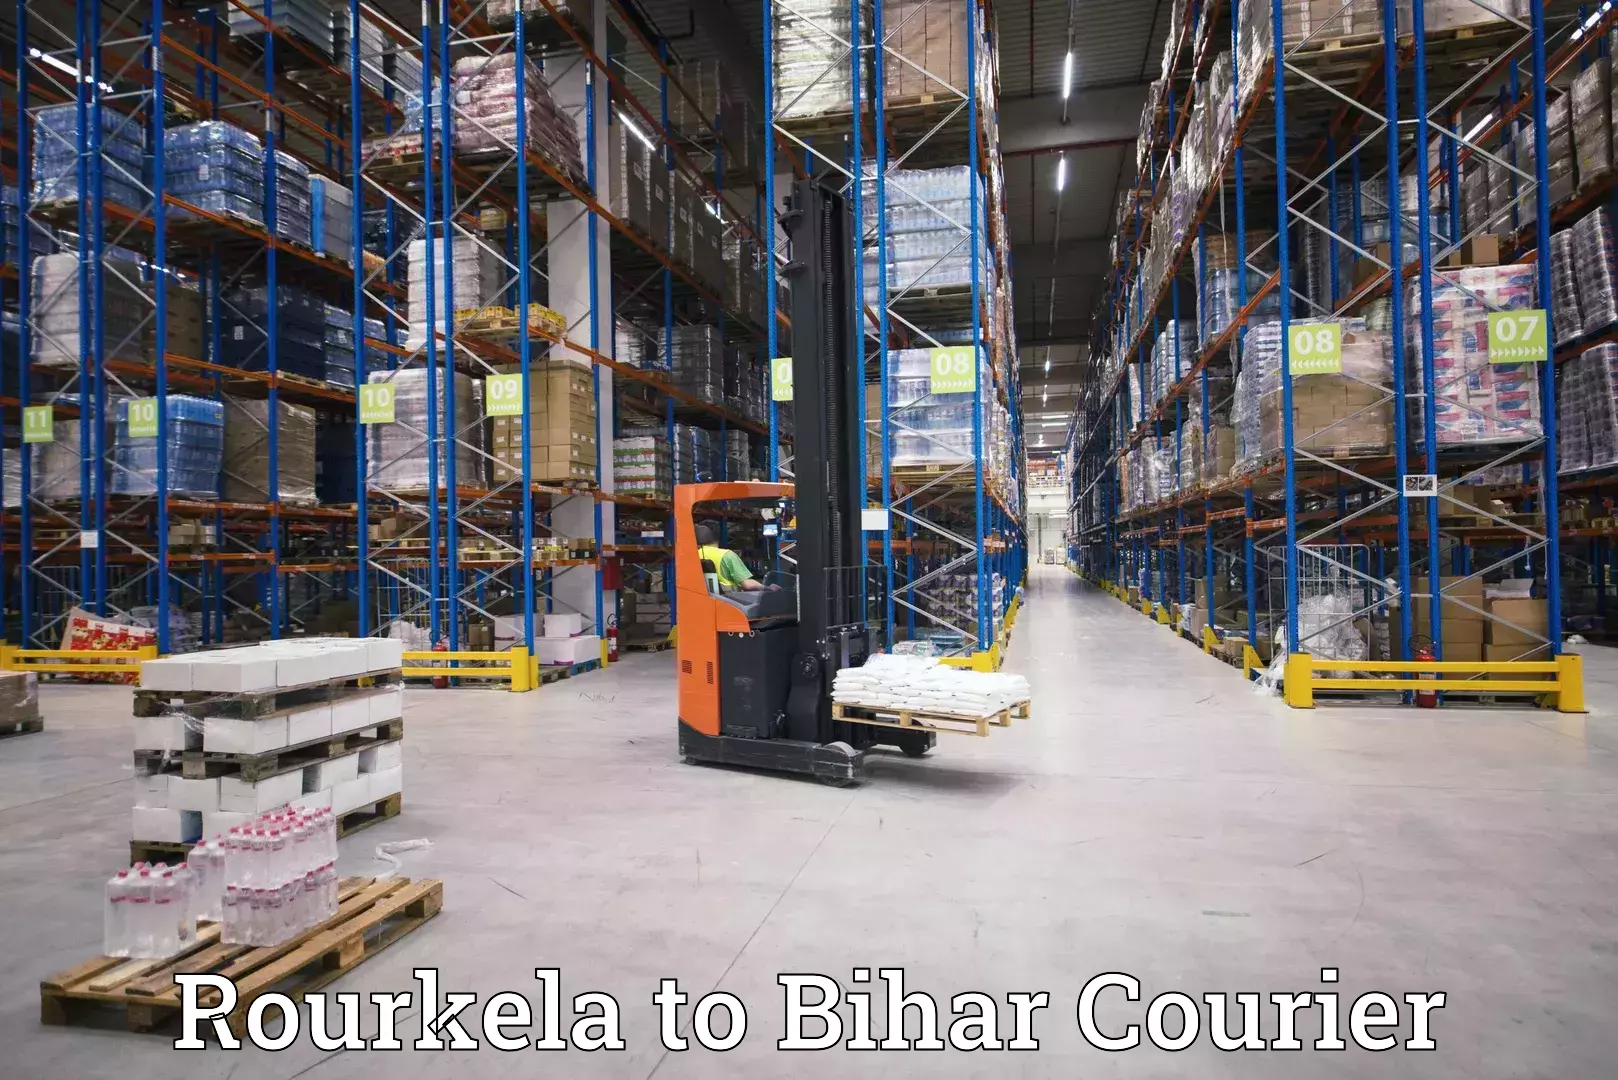 Next-generation courier services Rourkela to Bakhtiarpur